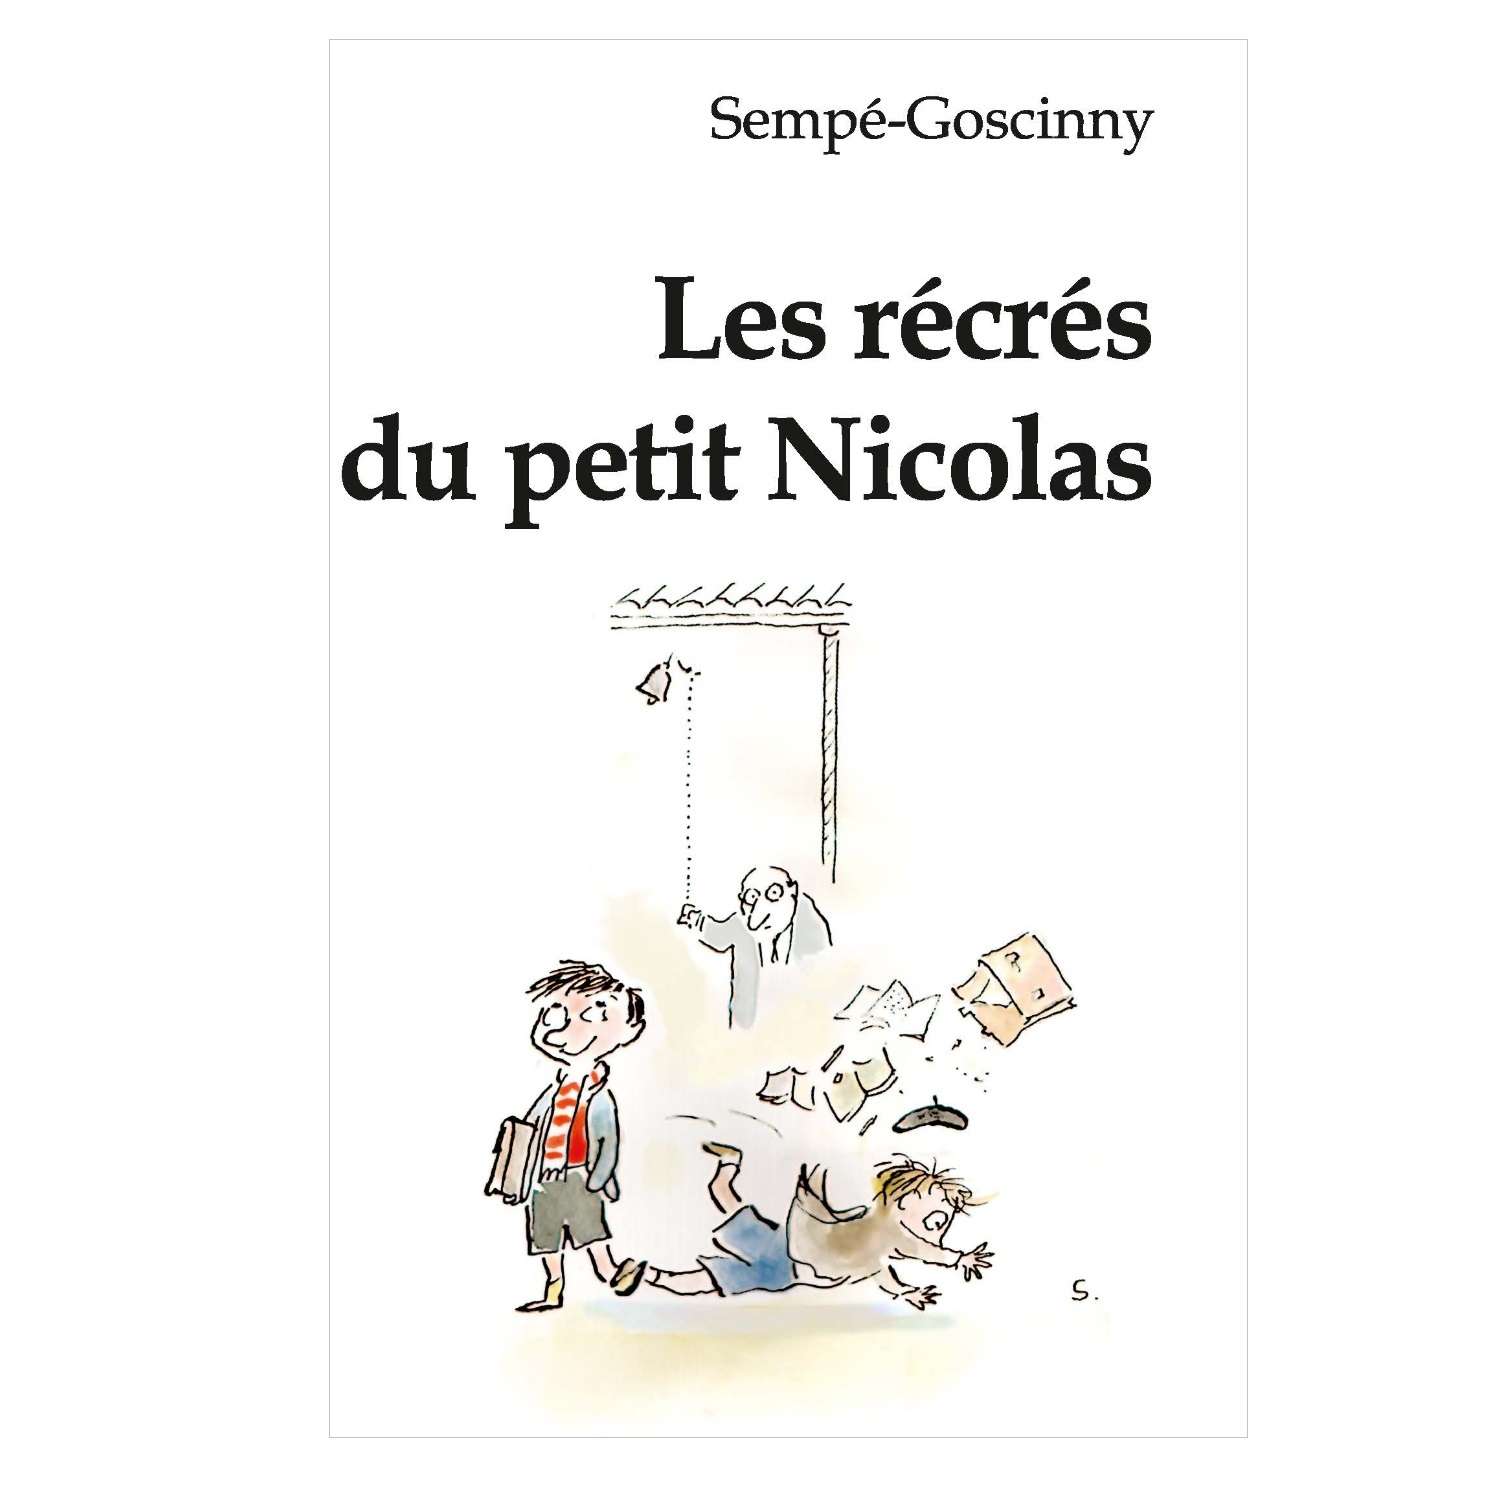 Книга Мирта-Принт Семпе-Госсини Перемены маленького Николя / на французском языке - фото 1